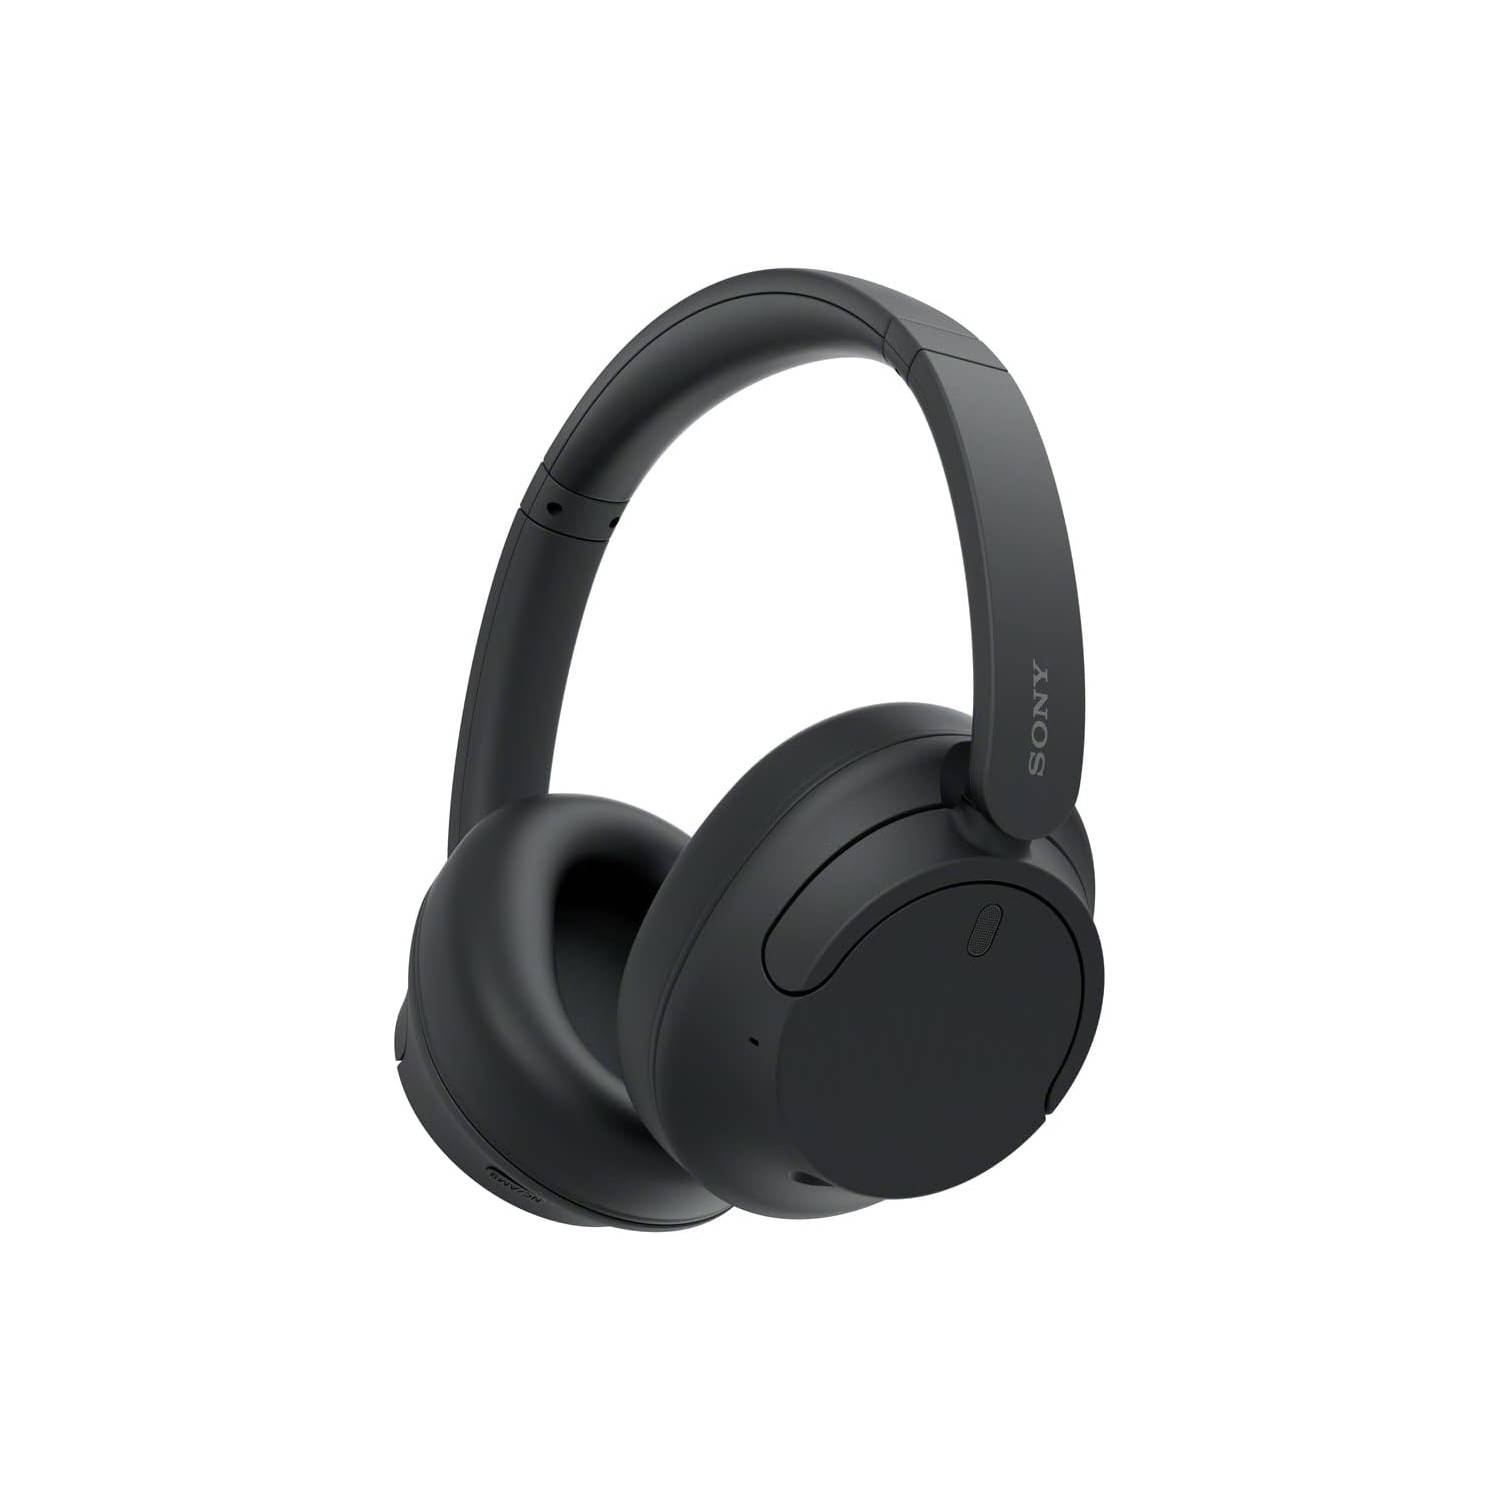 Audífonos bluetooth on ear Sony WH-CH520 micrófono incorporado